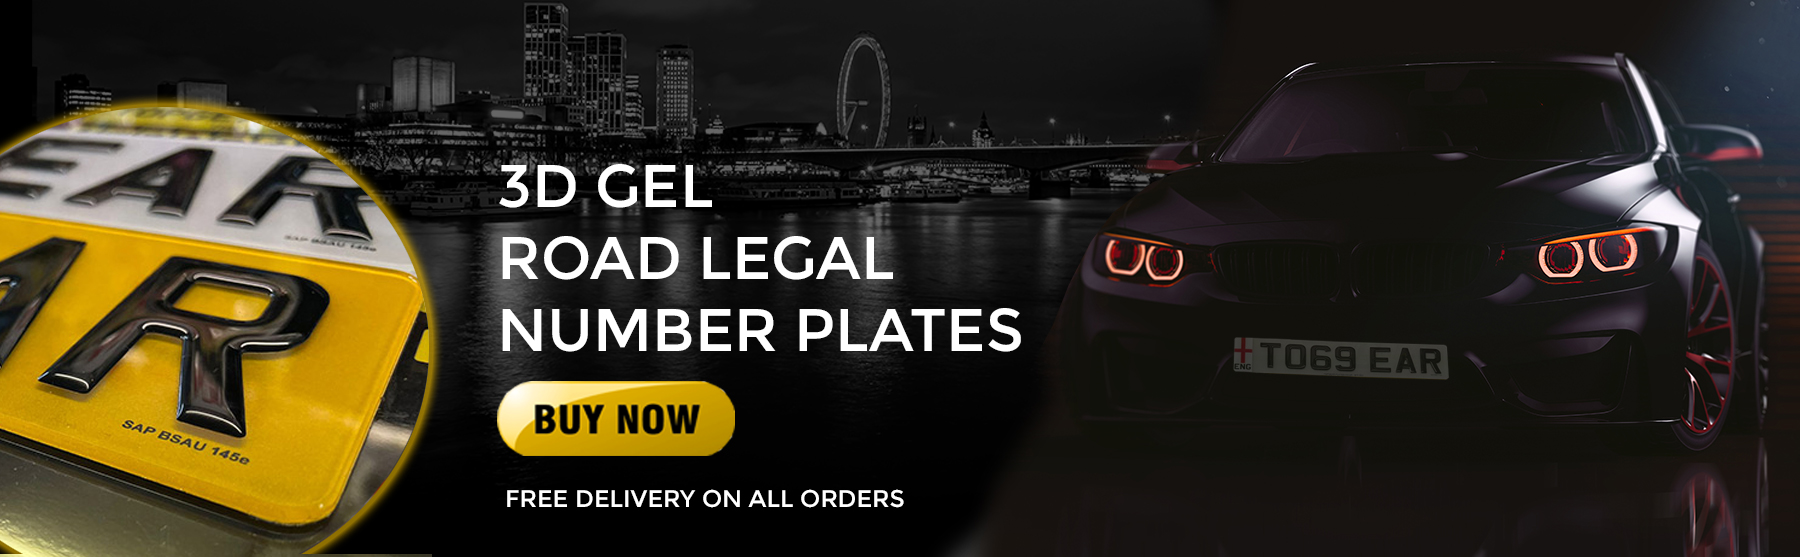 3d gel road legal number plates